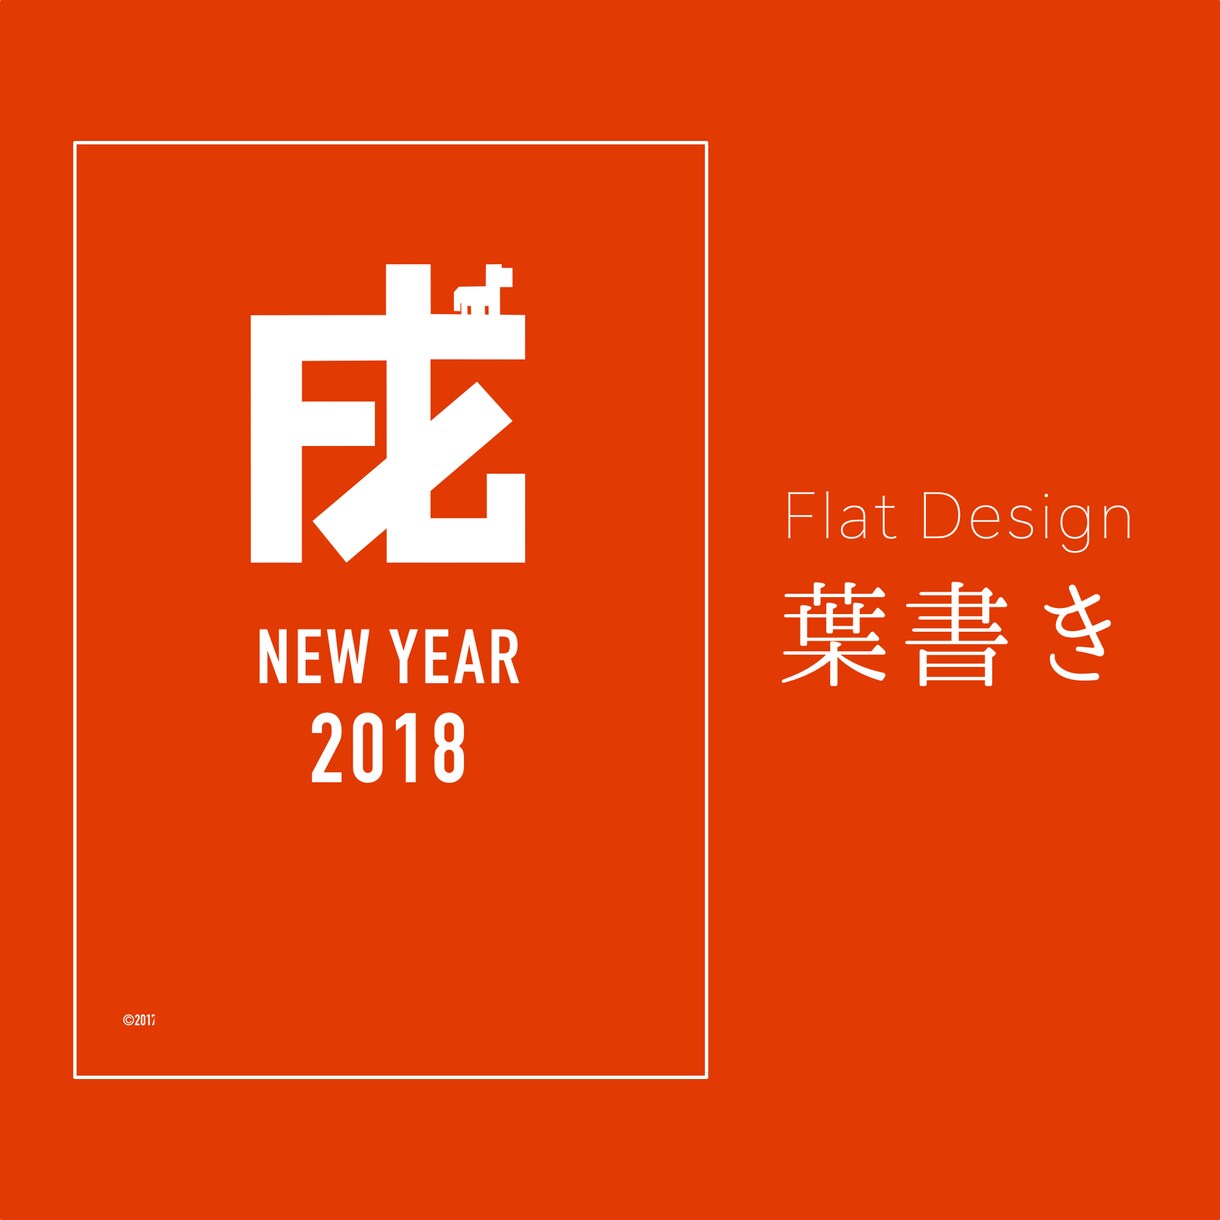 フラット・シンプルデザインの年賀状を製作します 世界で一つだけのオリジナルデザインお届けします イメージ1